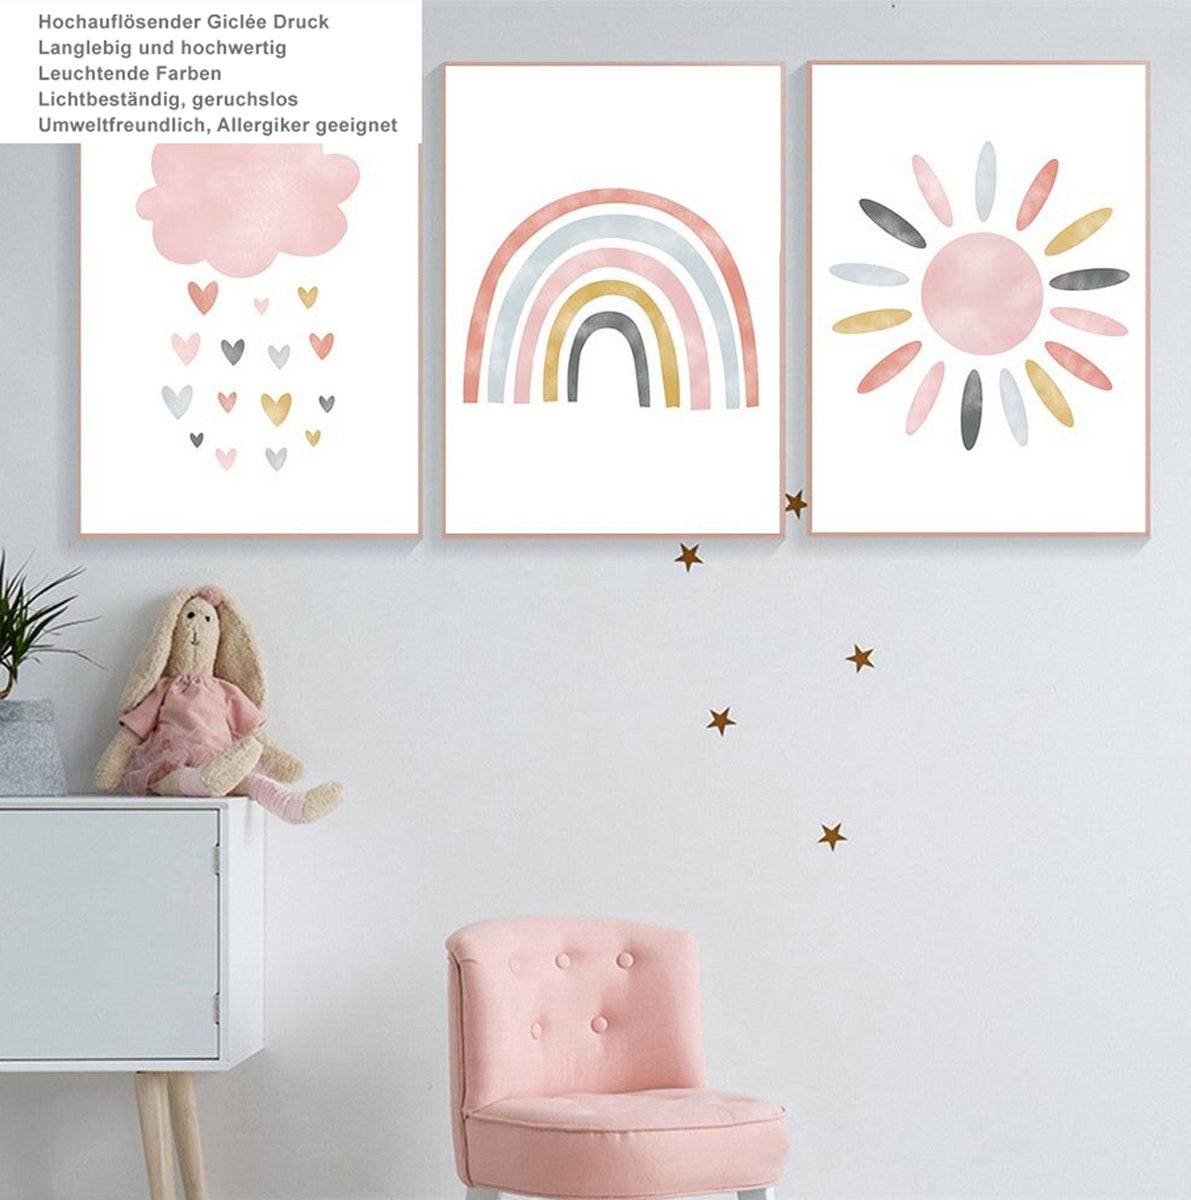 TPFLiving Poster Leinwand / Sonne, Wolken, Herzen, Regenbogen für Kinderzimmer - Auch im 3er Set / Verschiedene Größen - OHNE Rahmen - Modell k4236